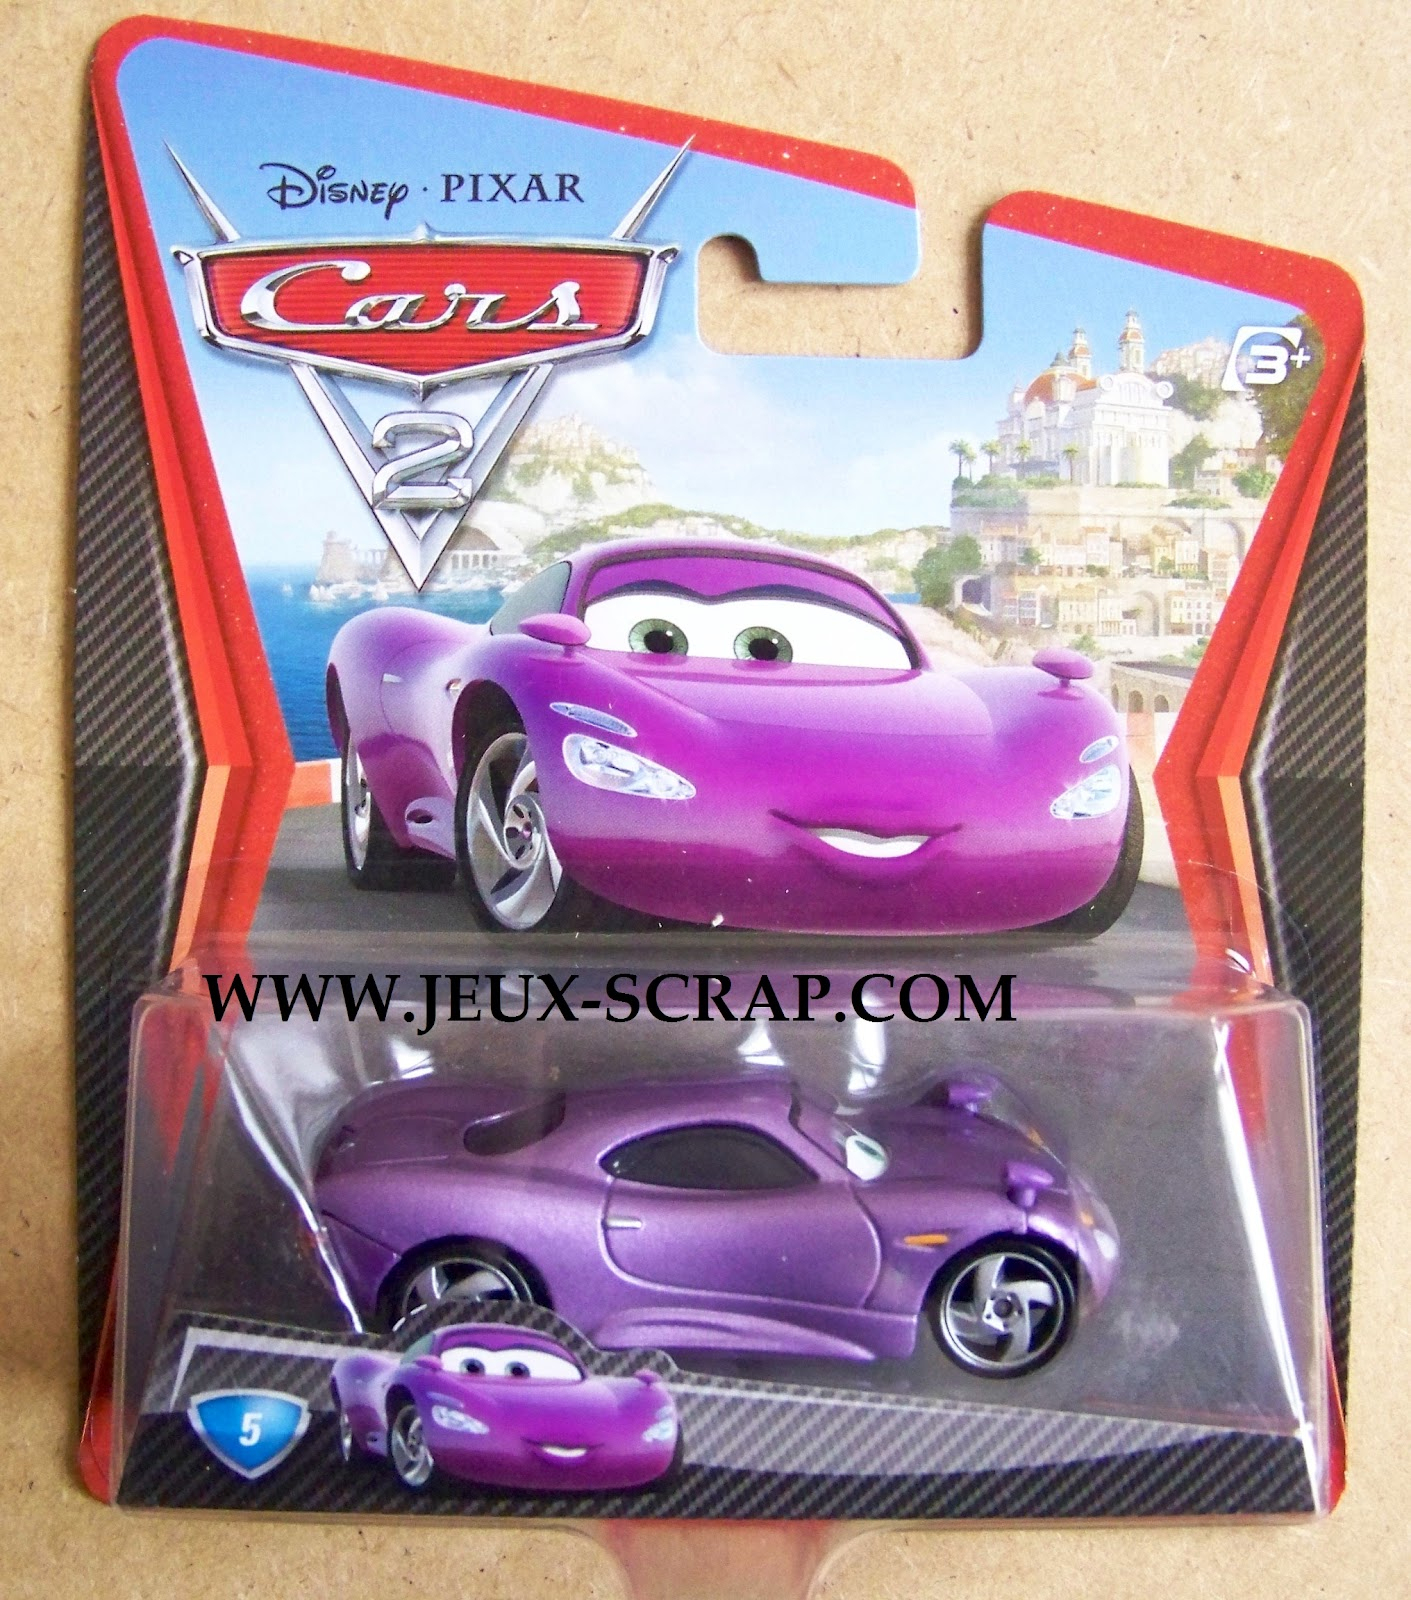 Blog Boutique Jouets Jeux-Scrap: Voitures Cars 2 Disney Pixar à Voitures Jouets Jeux 